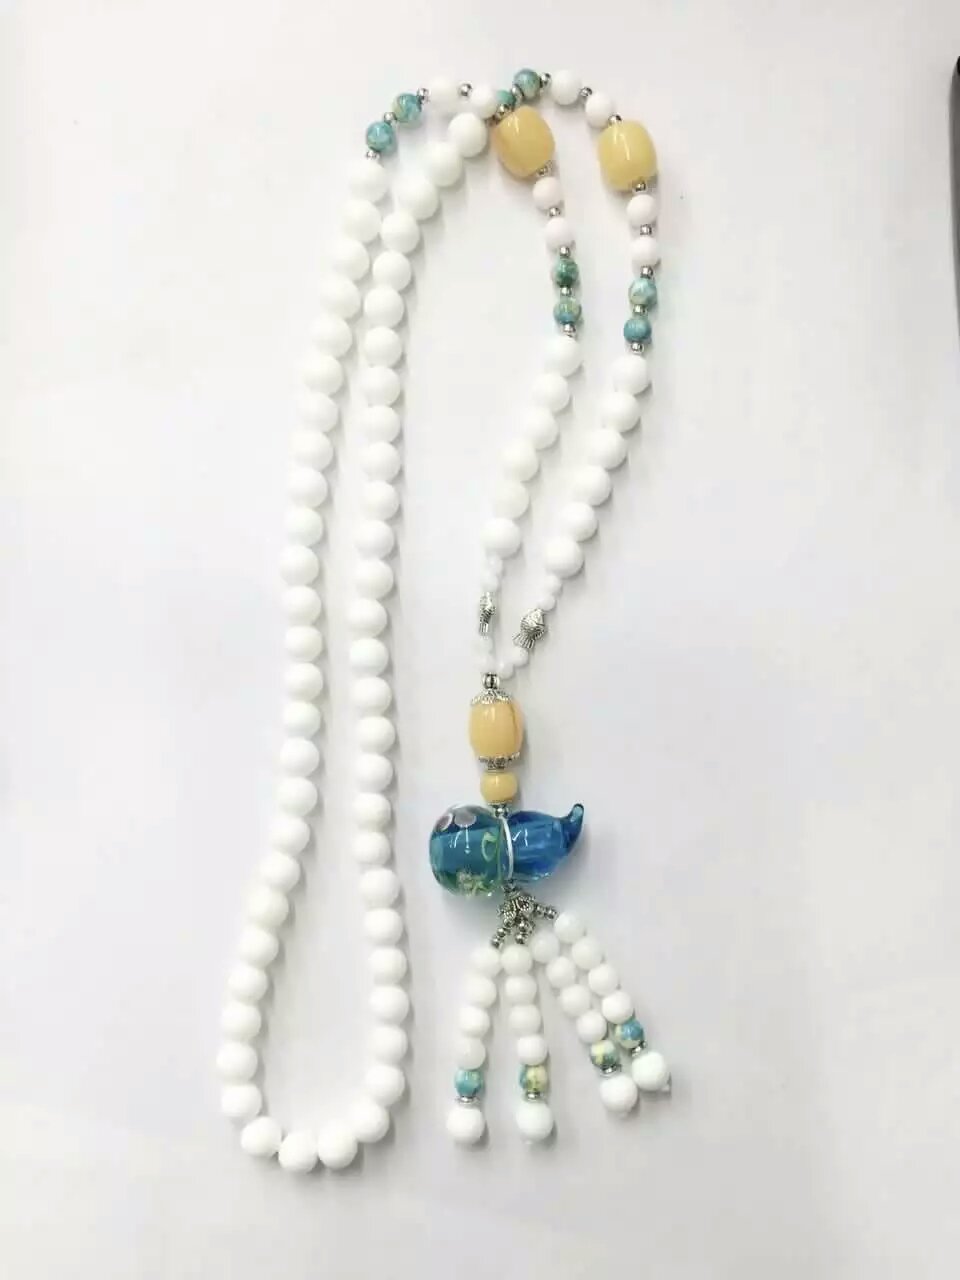 Wholesale white color bead essencial oil calabash bottle necklace